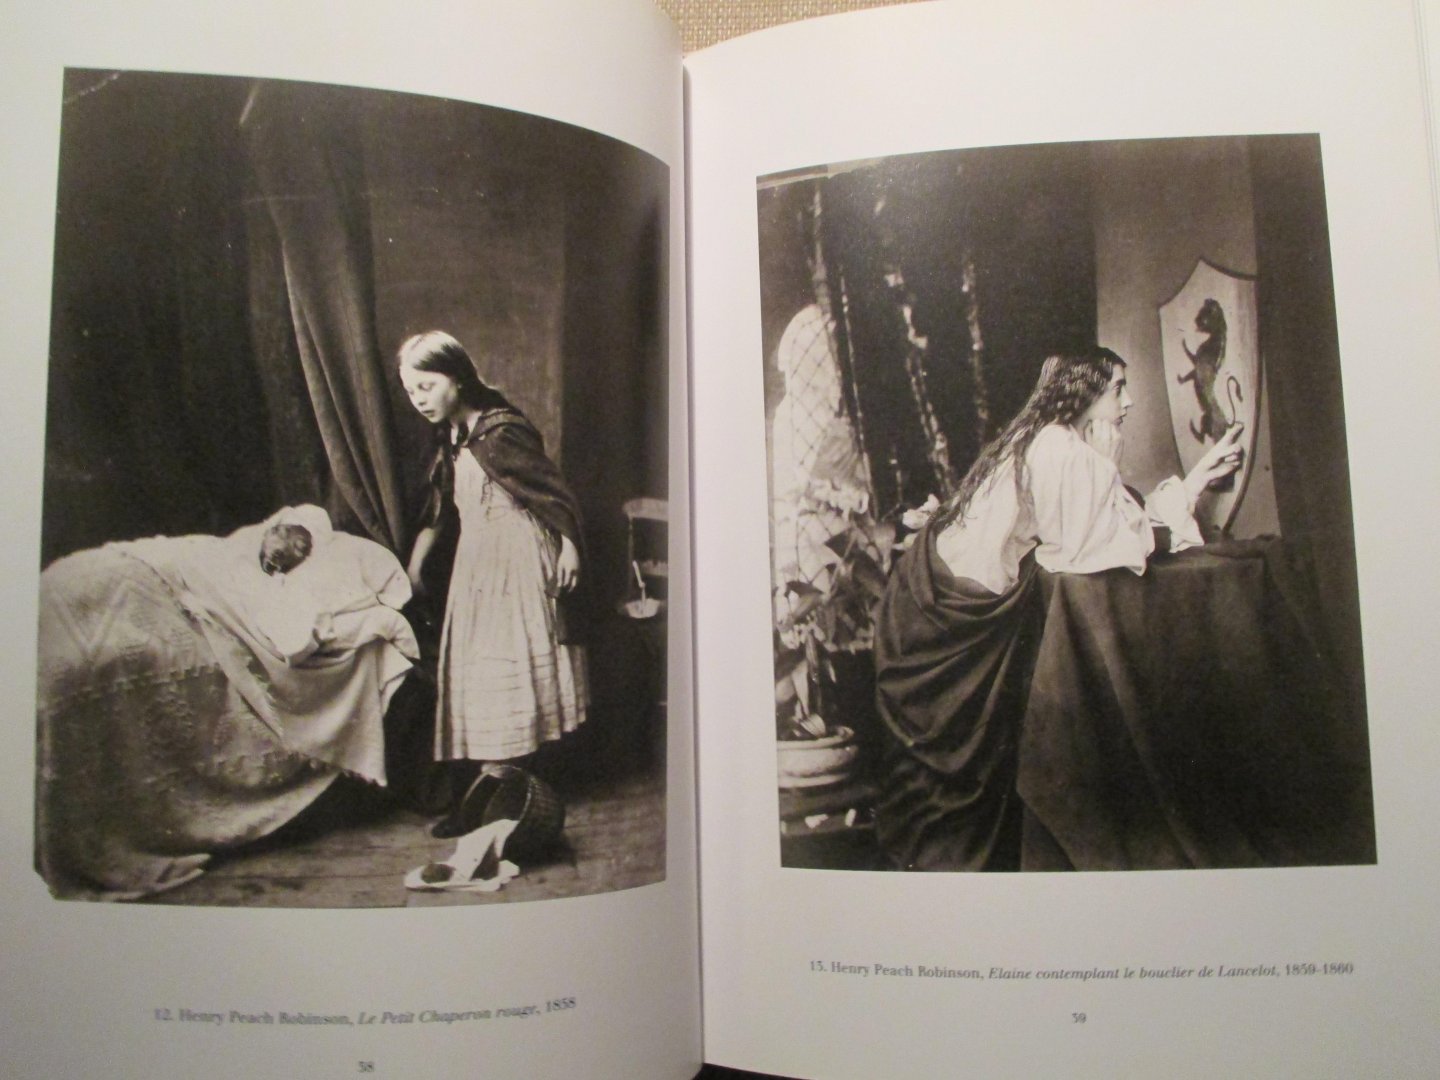 Bajac, Quentin - Tableaux vivants. Fantaisies photographiques victoriennes (1840-1880)